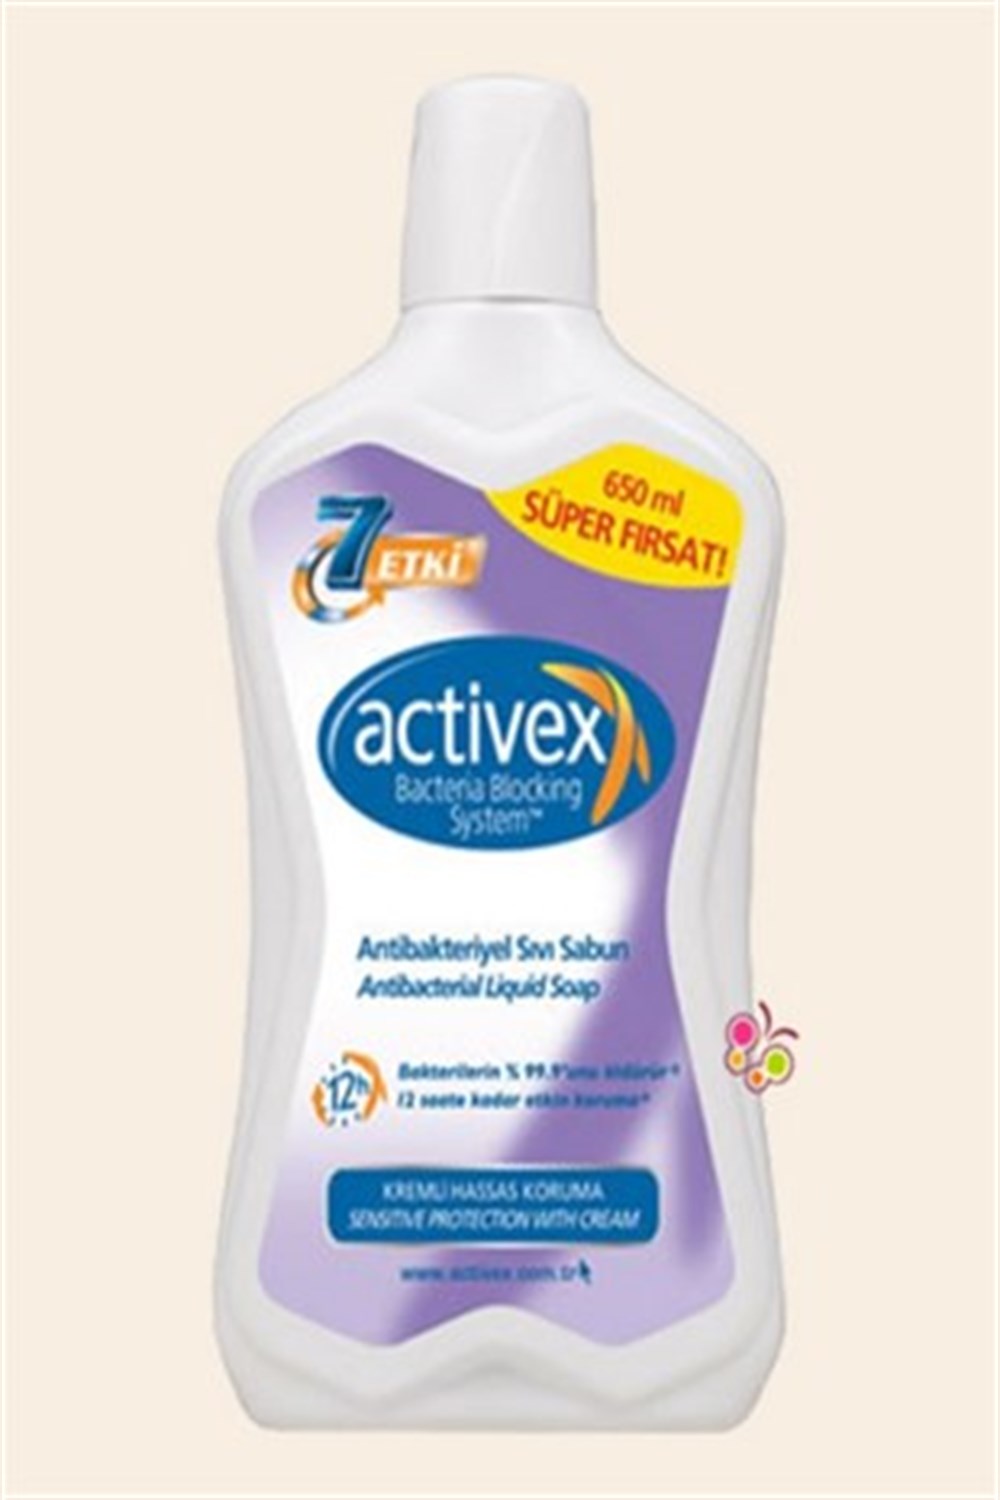 ACTİVEX 7 ETKİ Antibakteriyel Sıvı Sabun 650ml